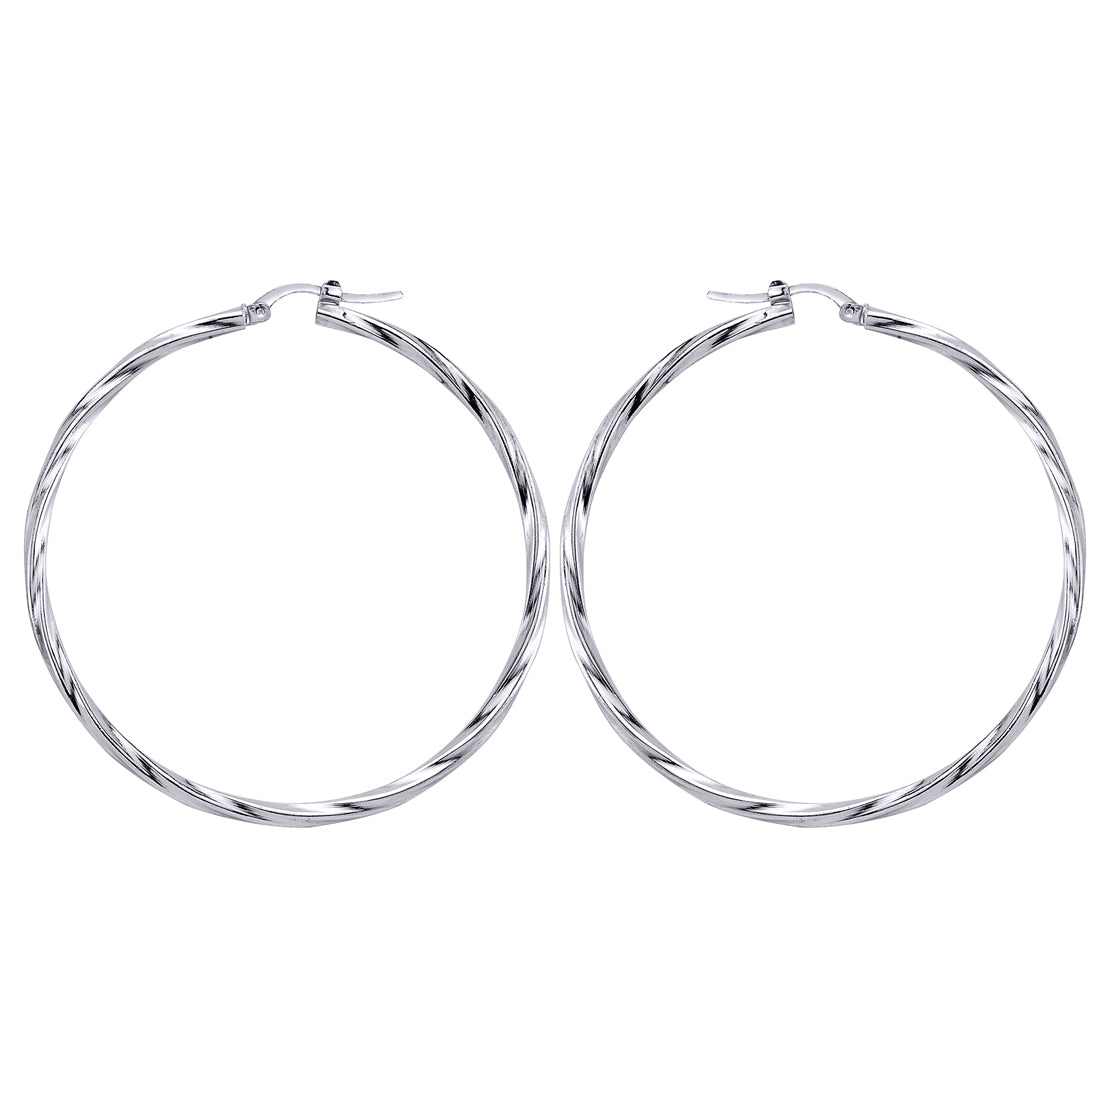 Silver  Twisted Hoop Earrings 59mm - ER17